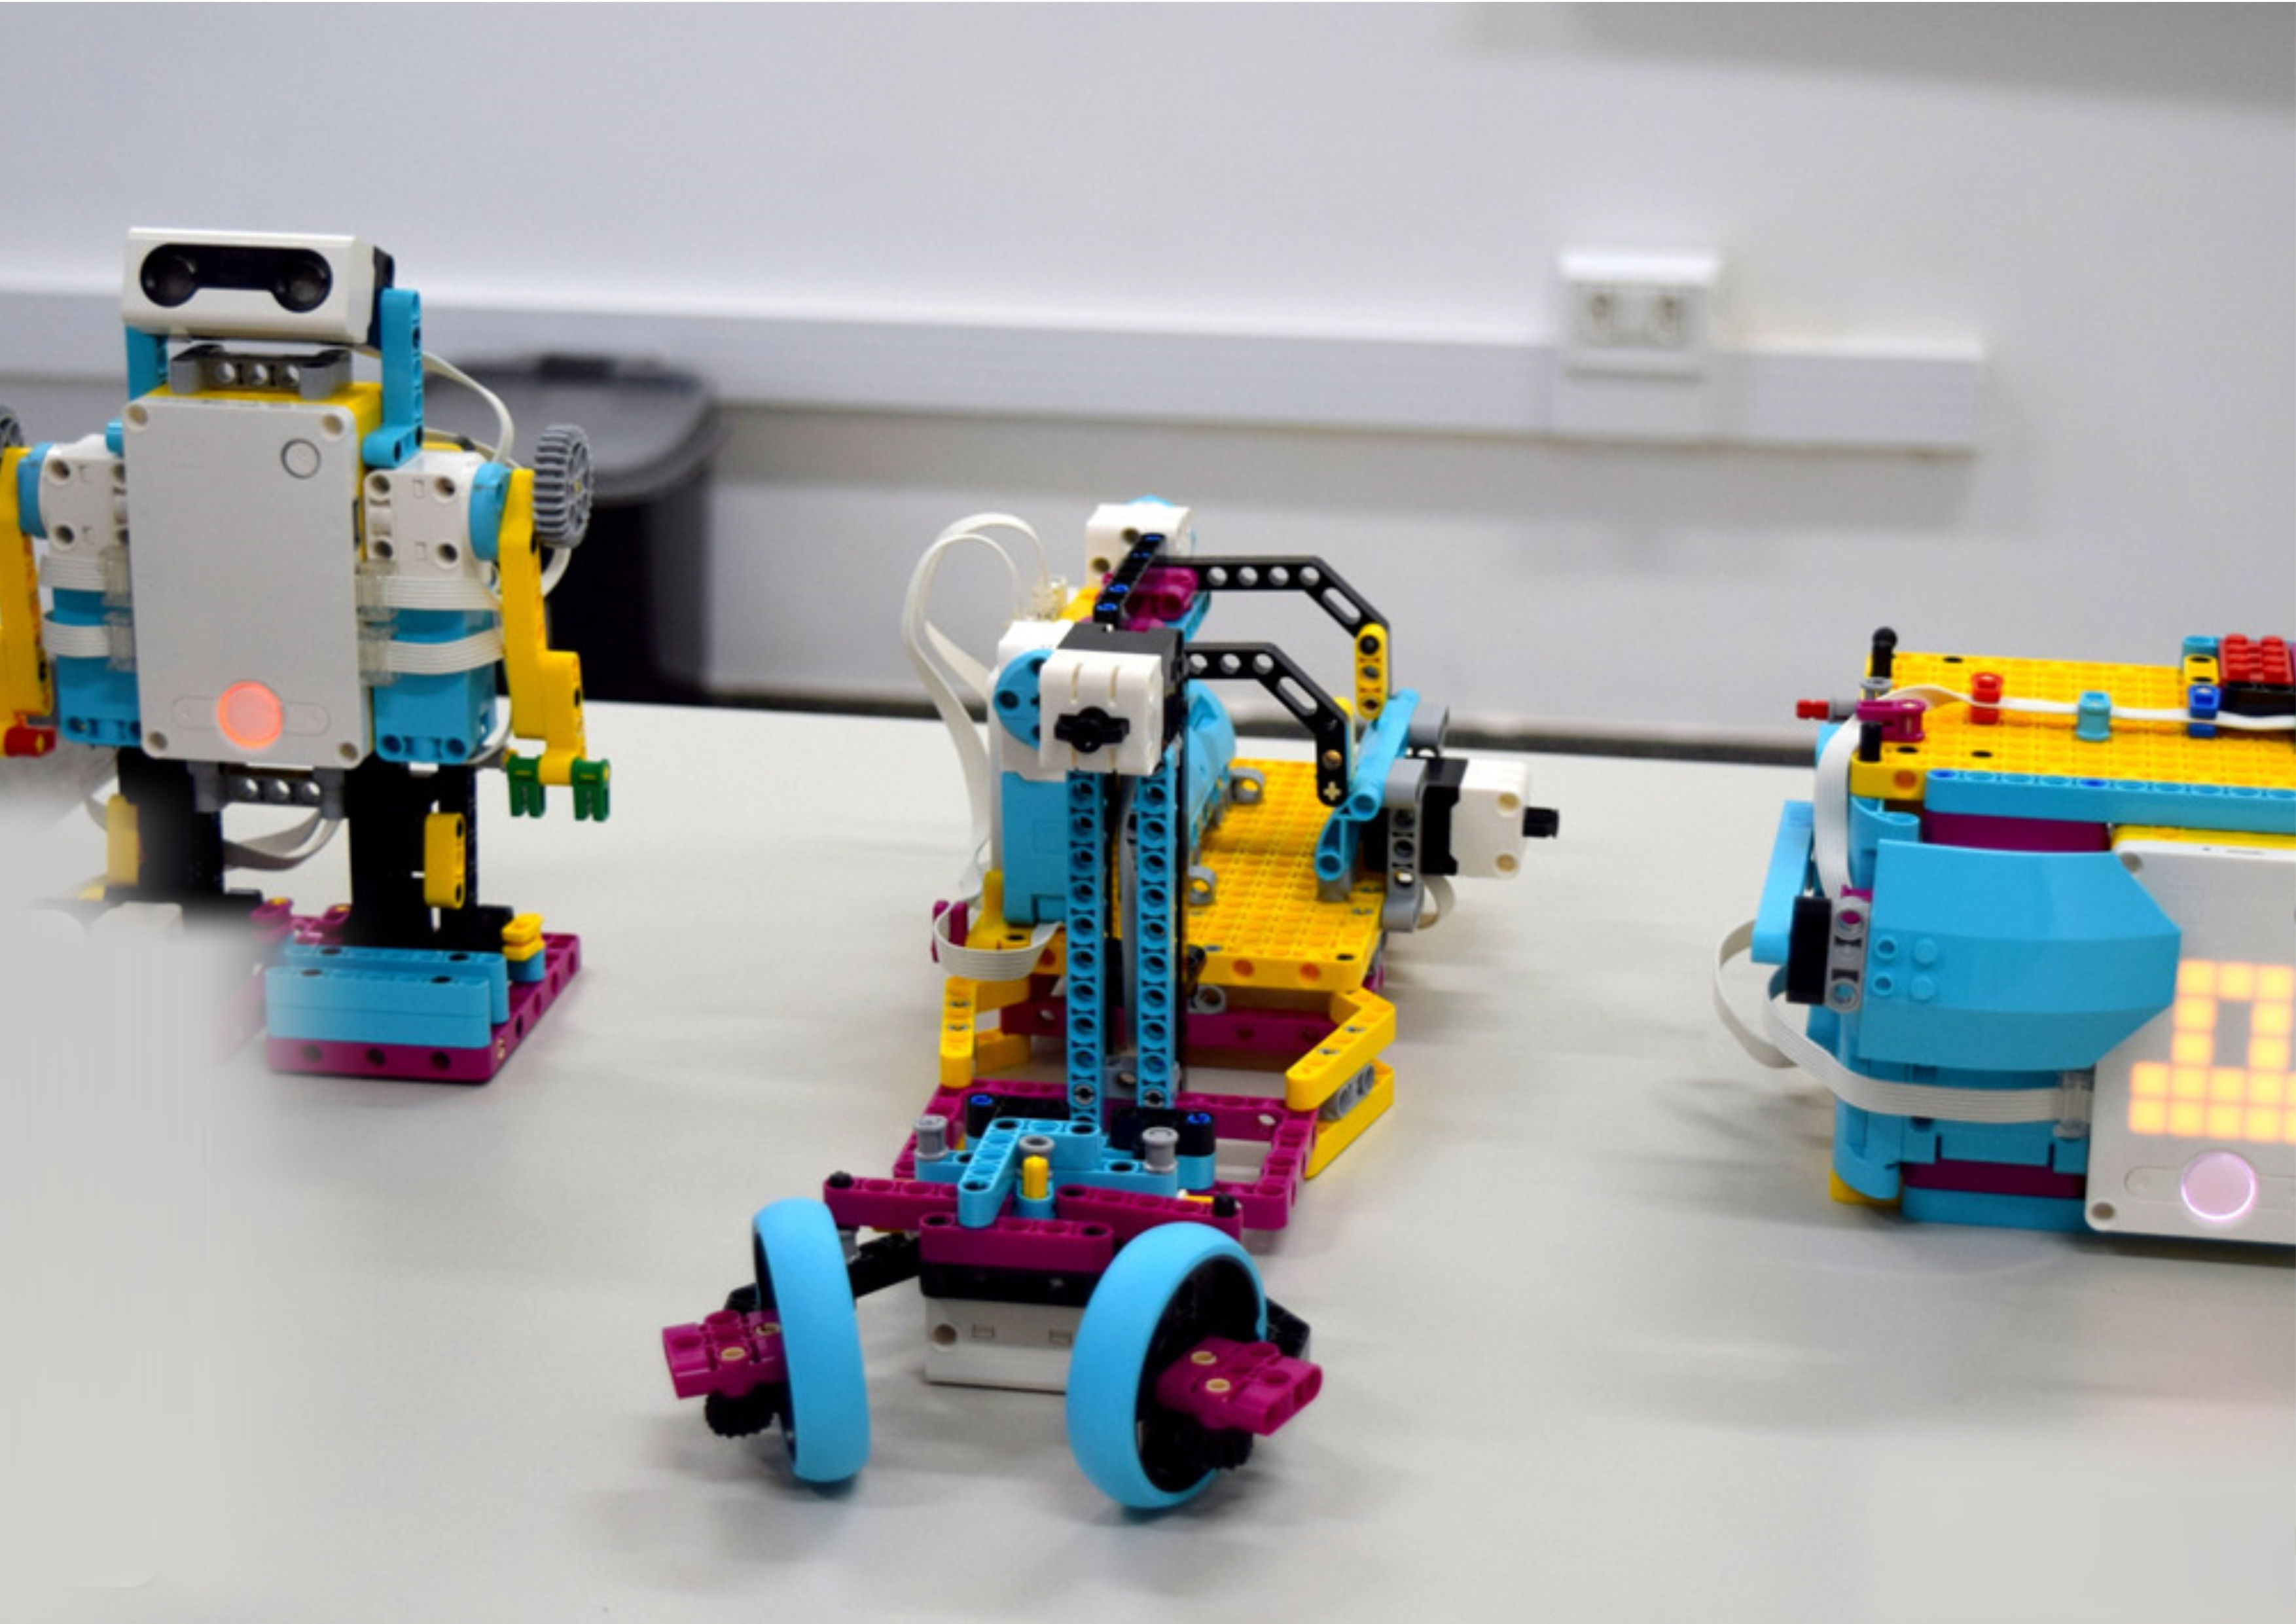 Escola abre oficinas de criação de games e de robôs inspiradas nos bumbás